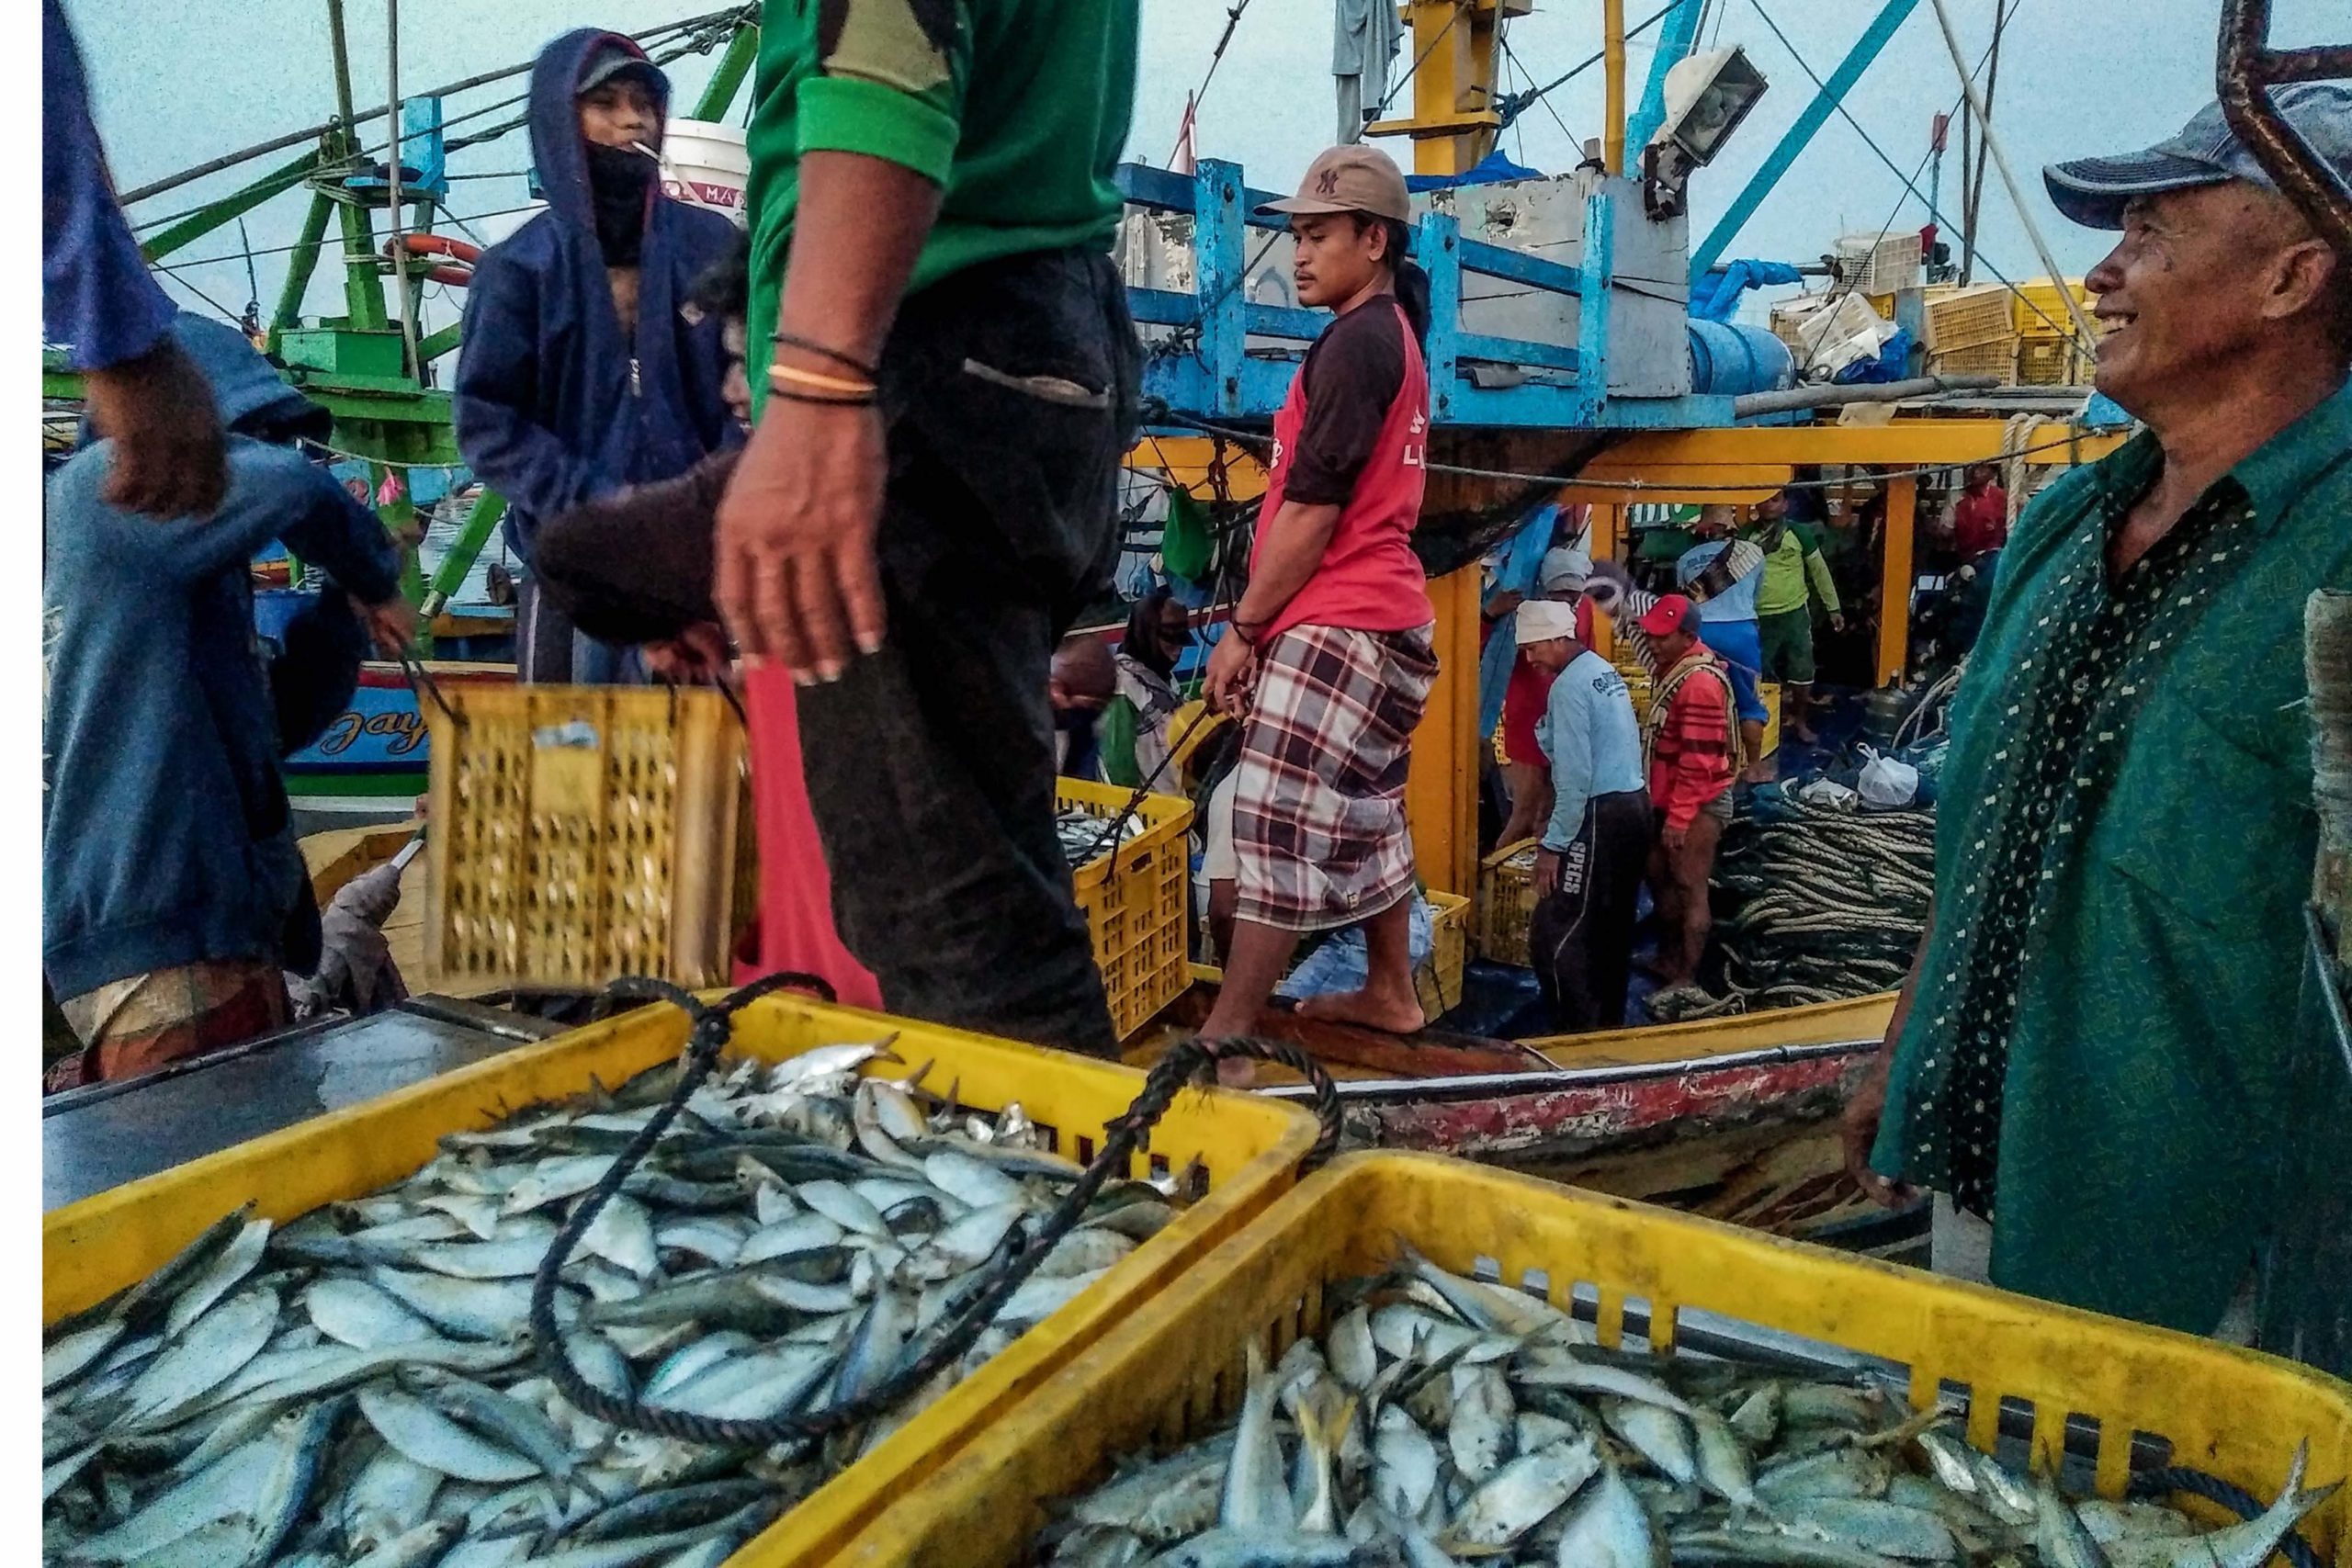 Jaring Alat Tangkap Ikan Nelayan, Harga Naik Tapi Kualitas